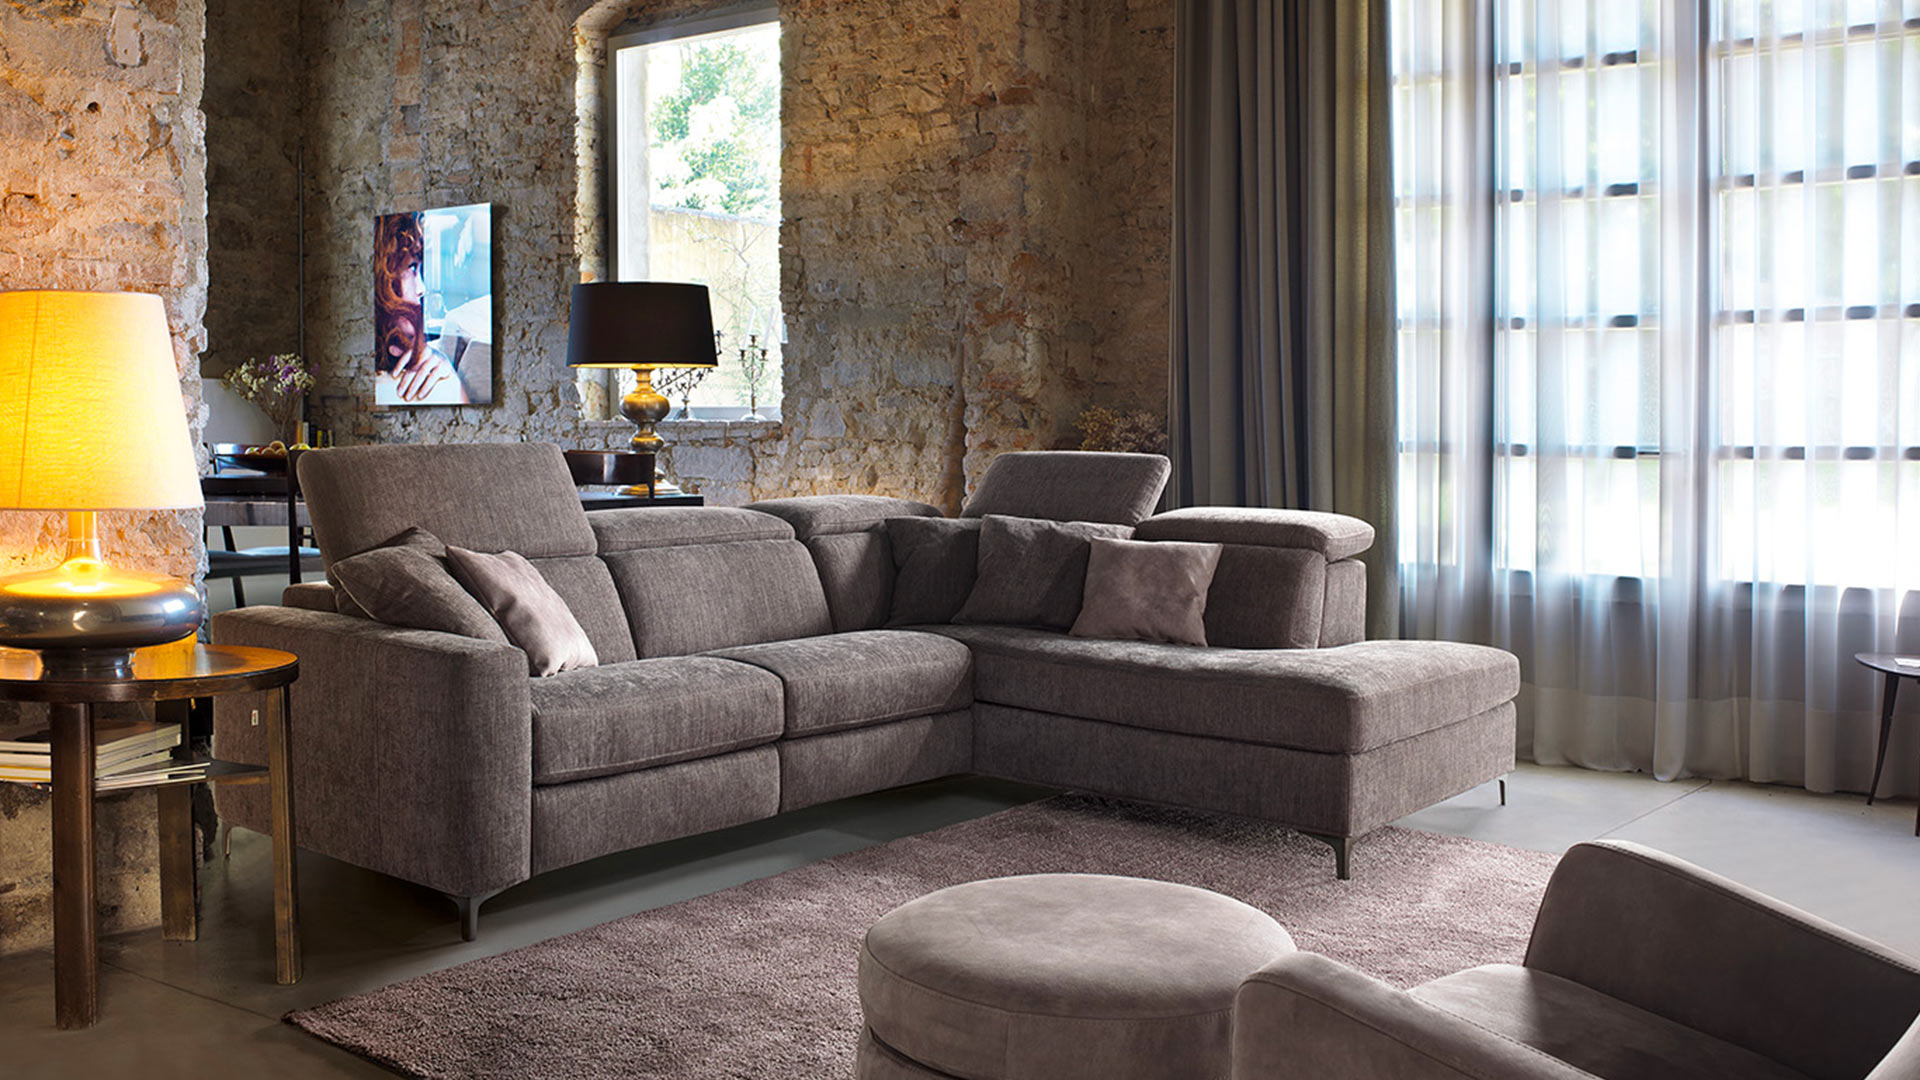 Blog IDW - Come scegliere il divano letto più adatto al proprio spazio